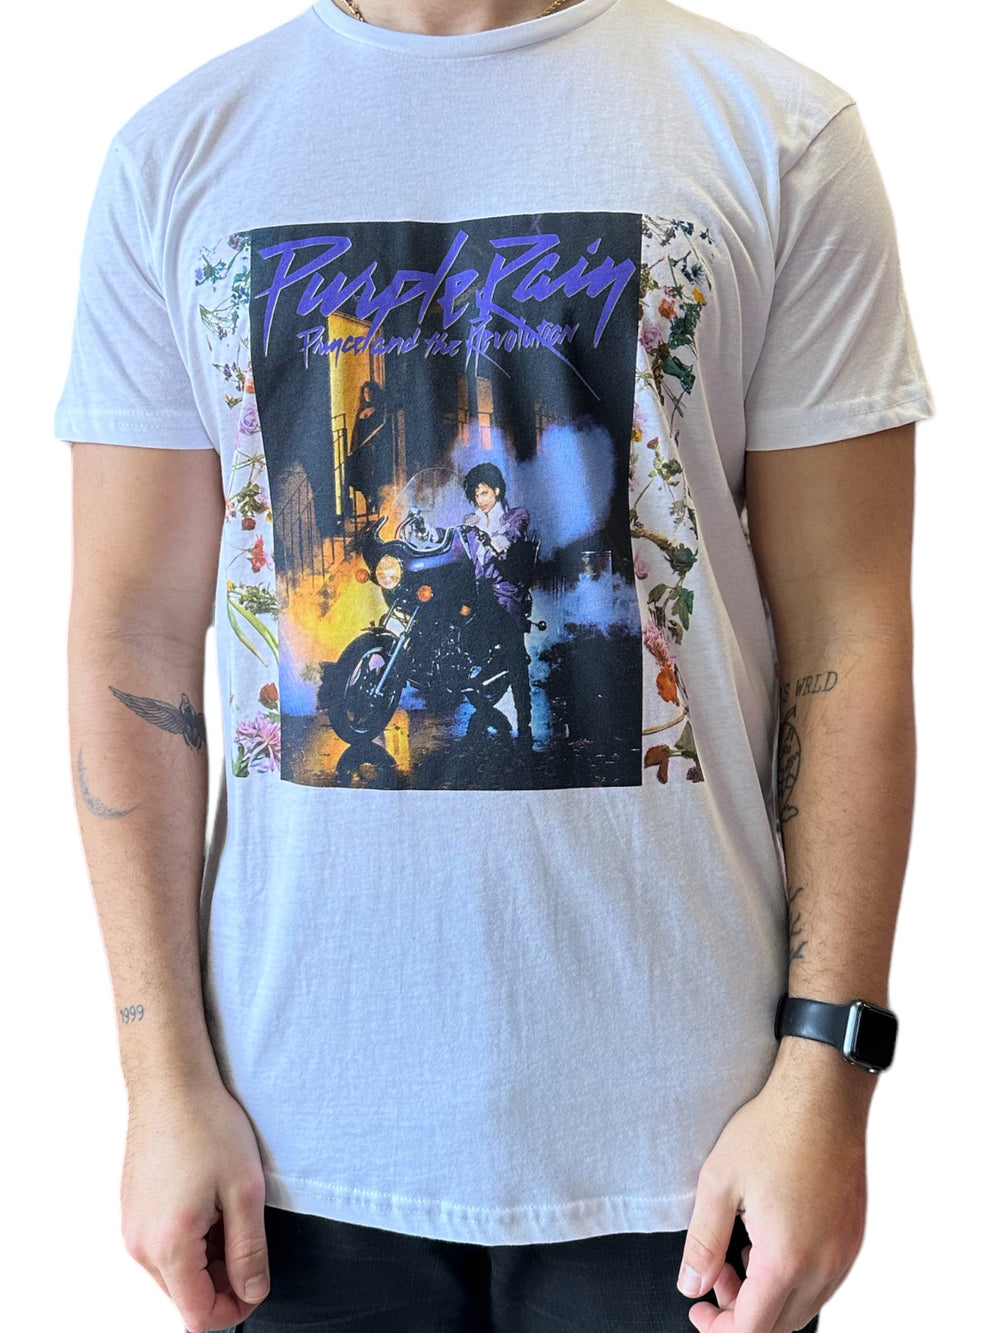 Prince – Purple Rain Album Front Cover Unisex Official T-Shirt NEW